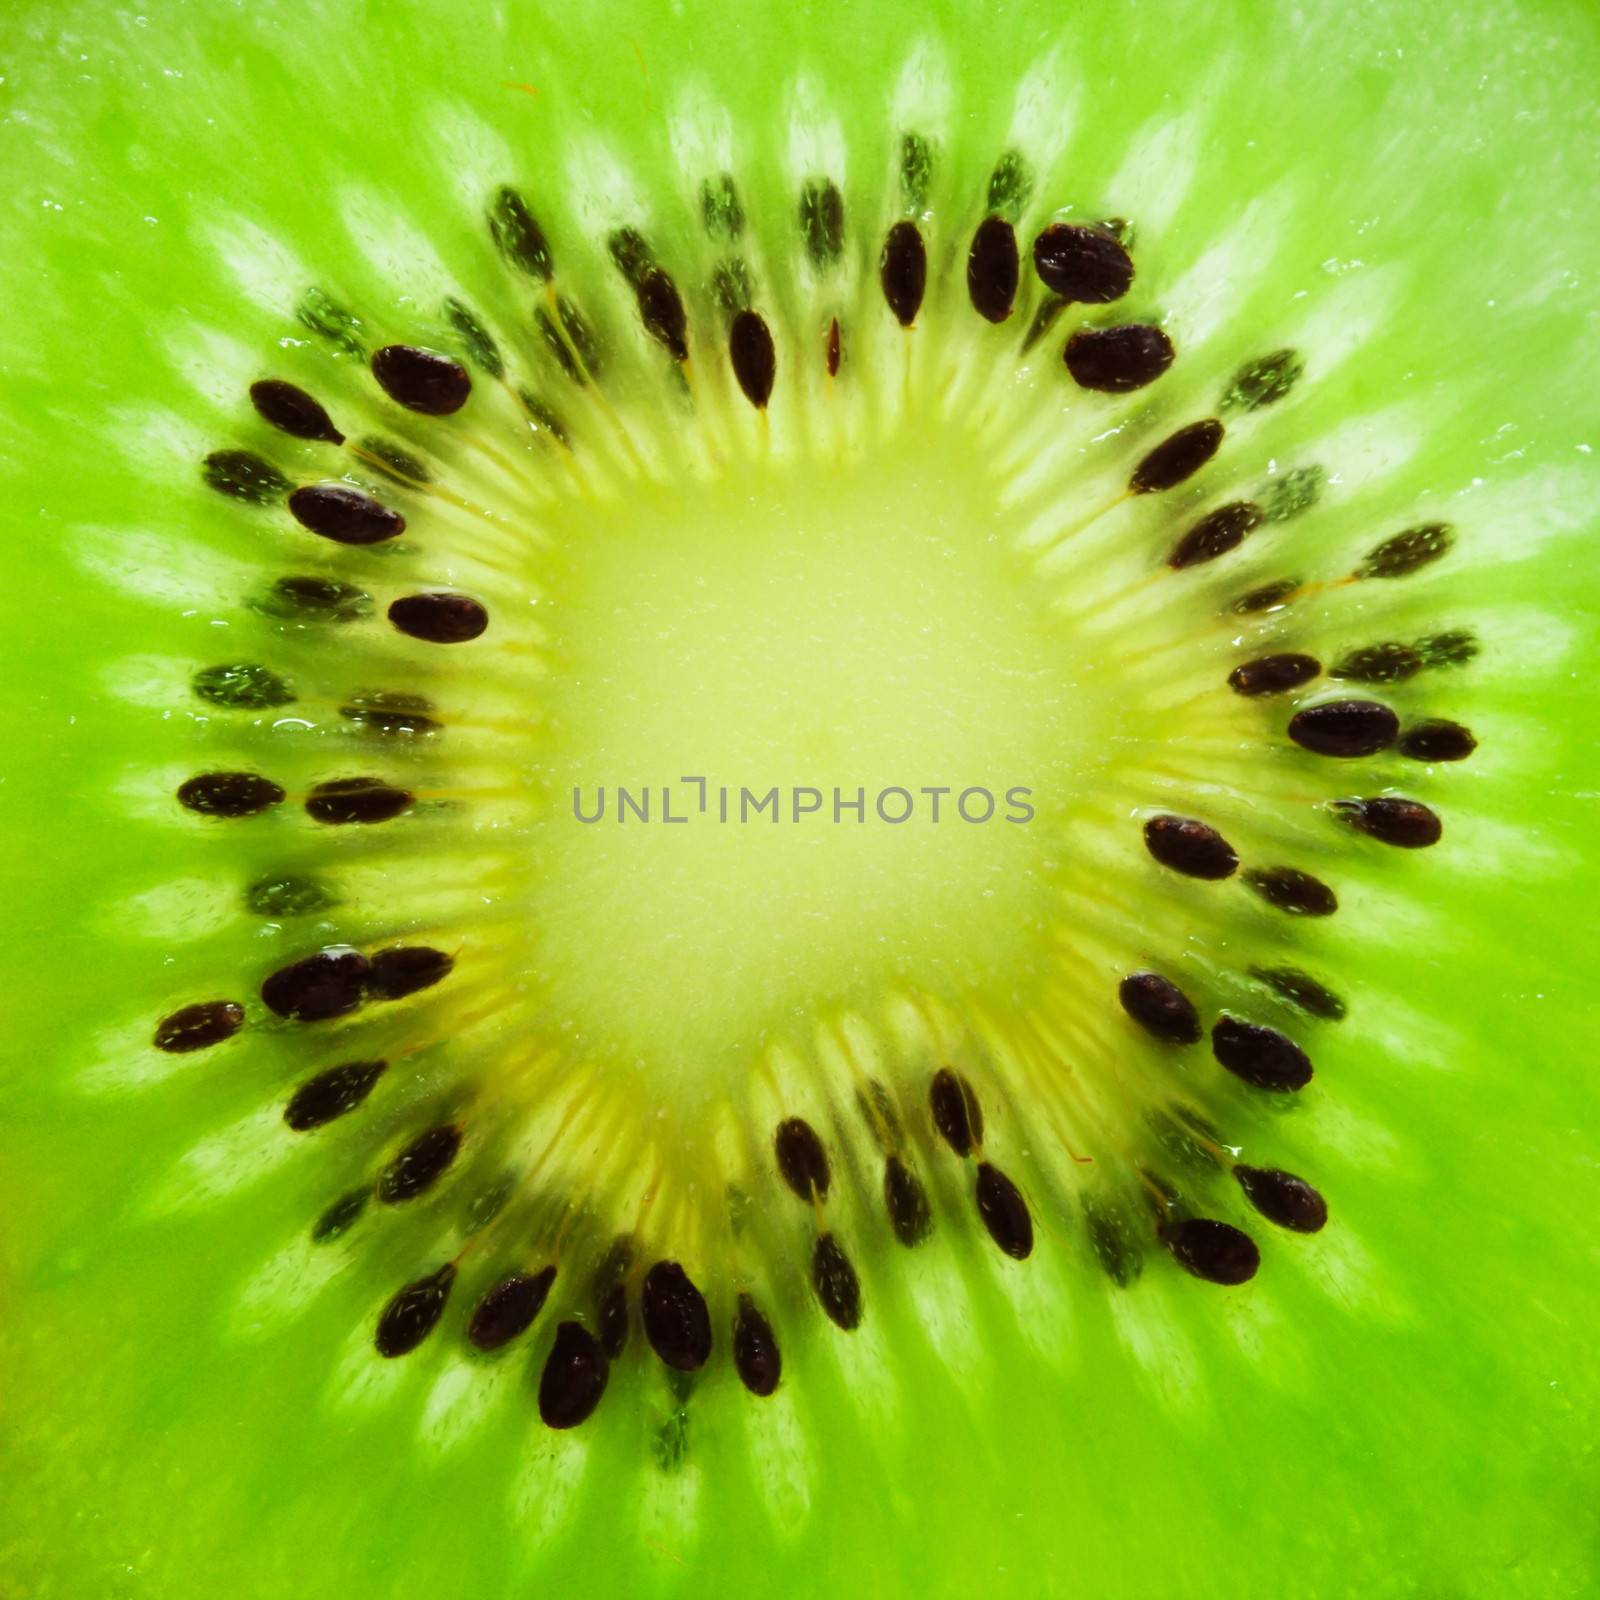 Macro photo of fresh juicy kiwi fruit